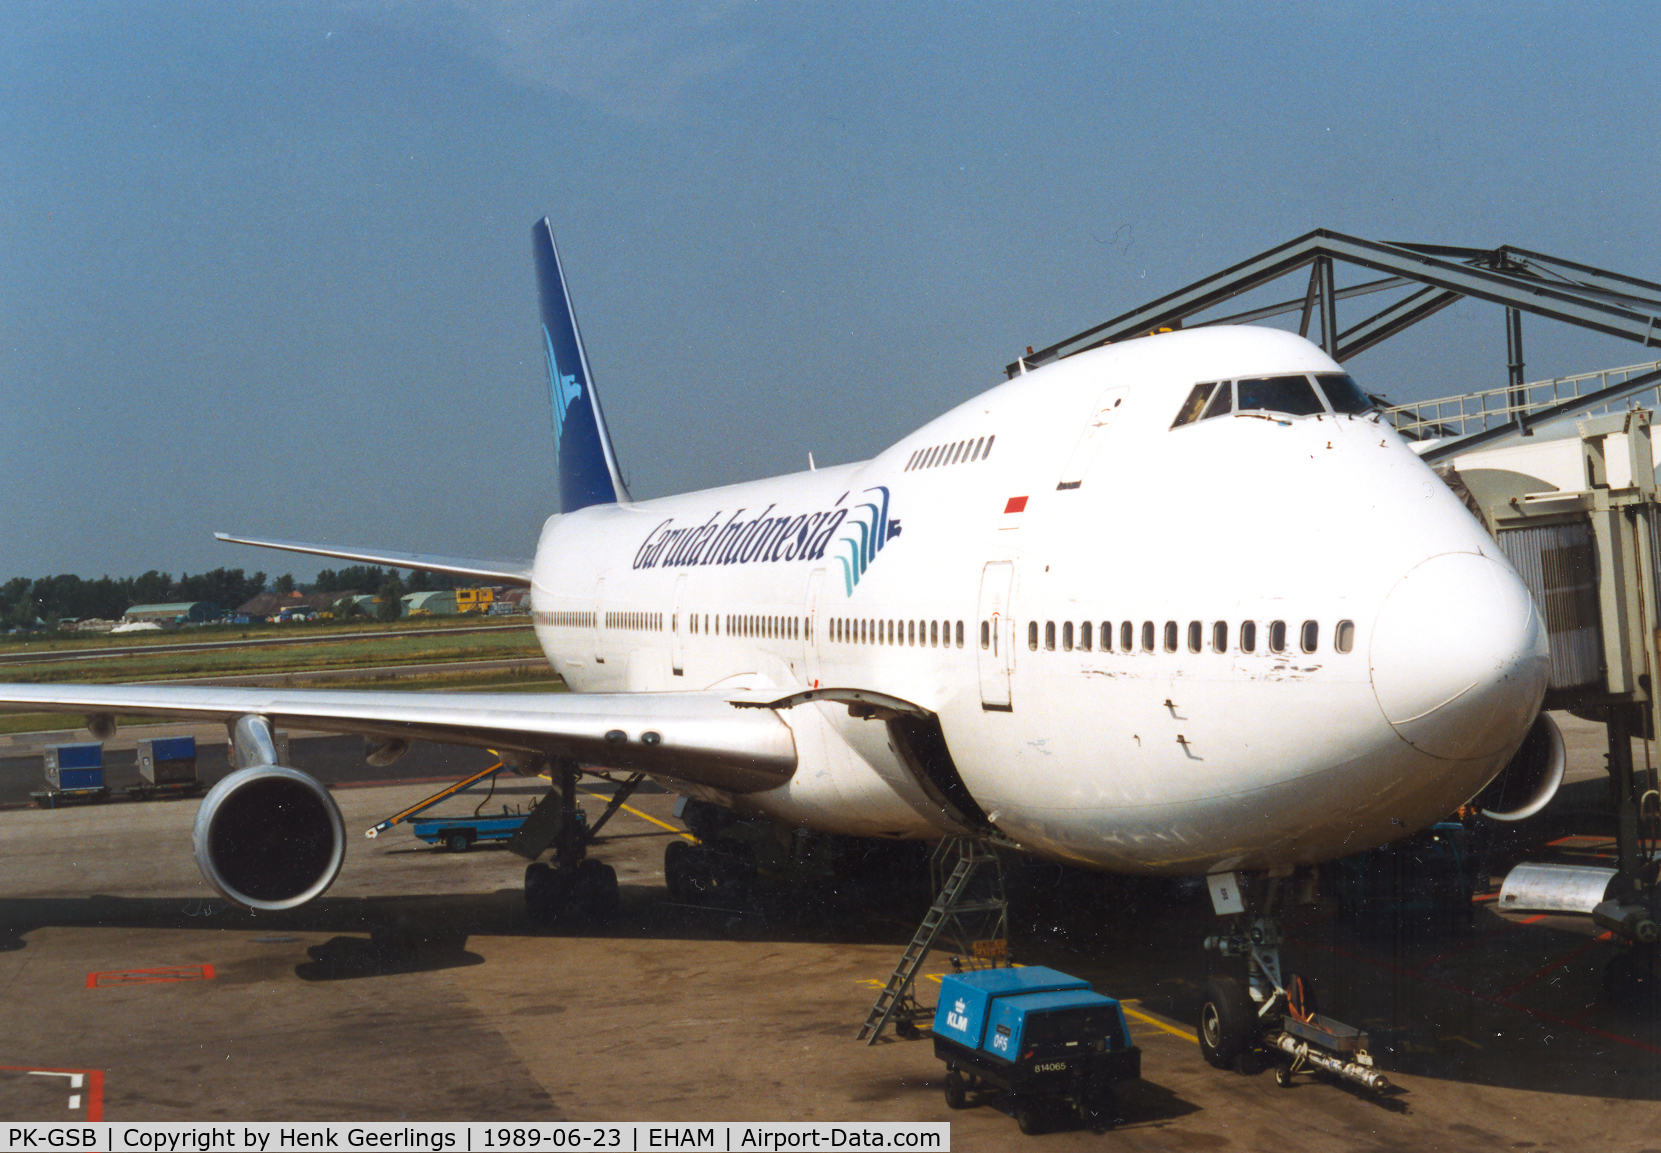 PK-GSB, 1980 Boeing 747-2U3B C/N 22247, Garuda